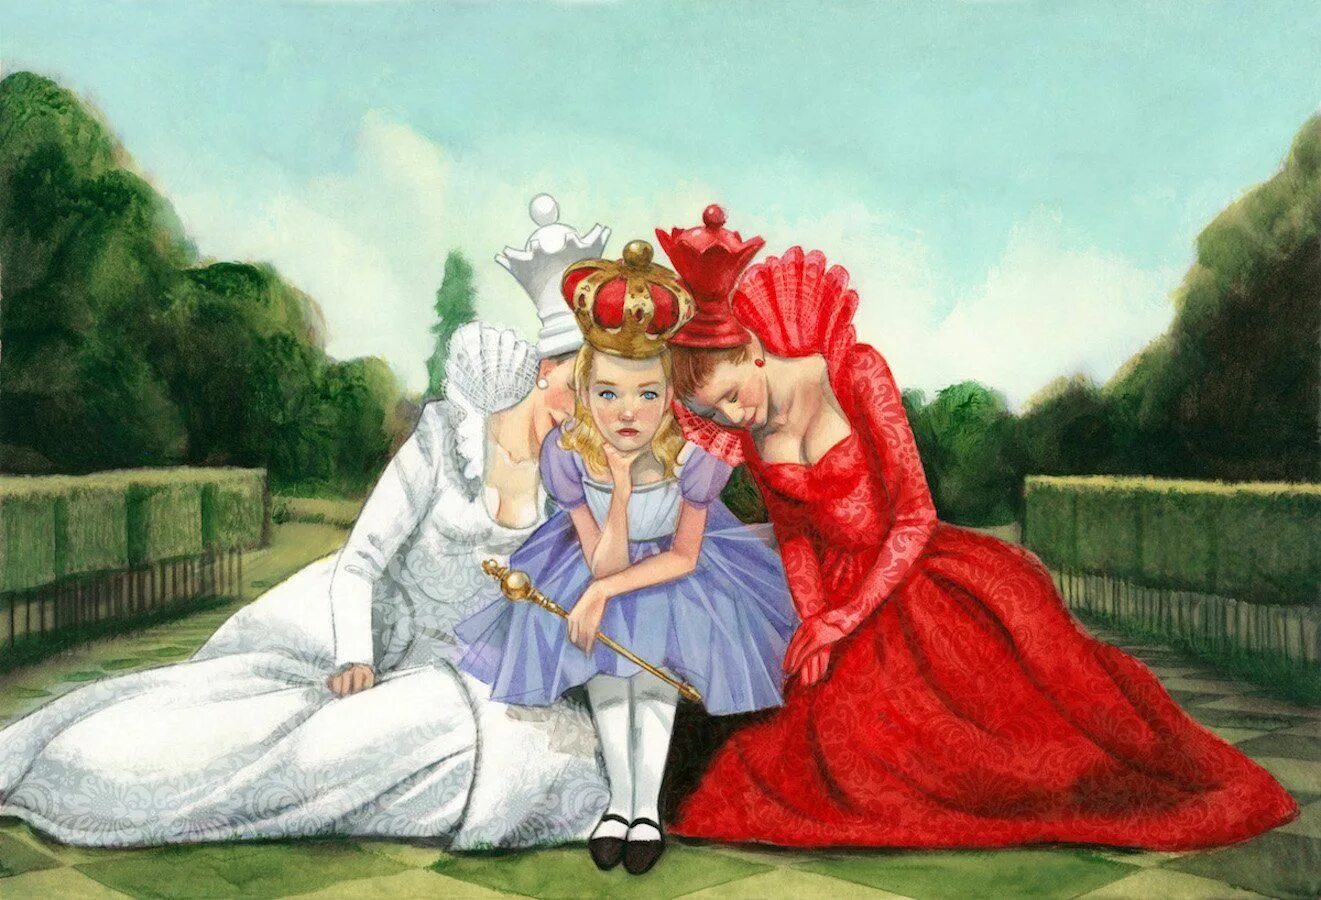 Сказка алиса в стране чудес 2. Льюис Кэрролл Алиса в стране чудес Королева. Алиса в Зазеркалье Королева. Королева Льюис Кэрролла из Алиса в Зазеркалье. Шахматная Королева Алиса в стране чудес.